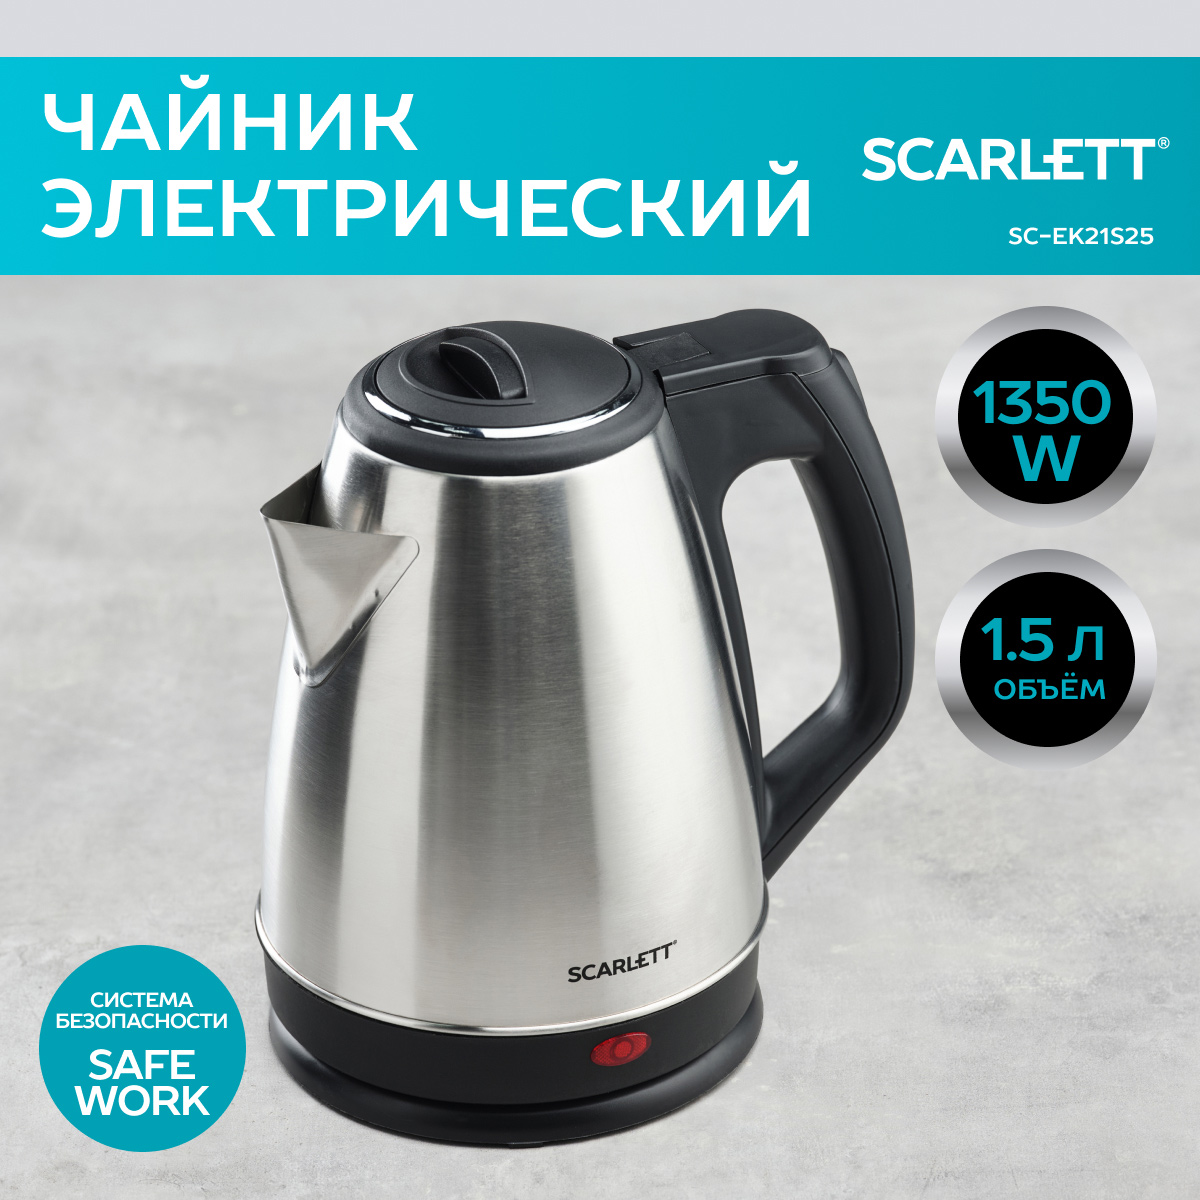 Чайник электрический Scarlett SC-EK21S25 1.5 л серебристый, черный чайник электрический scarlett sc ek21s25